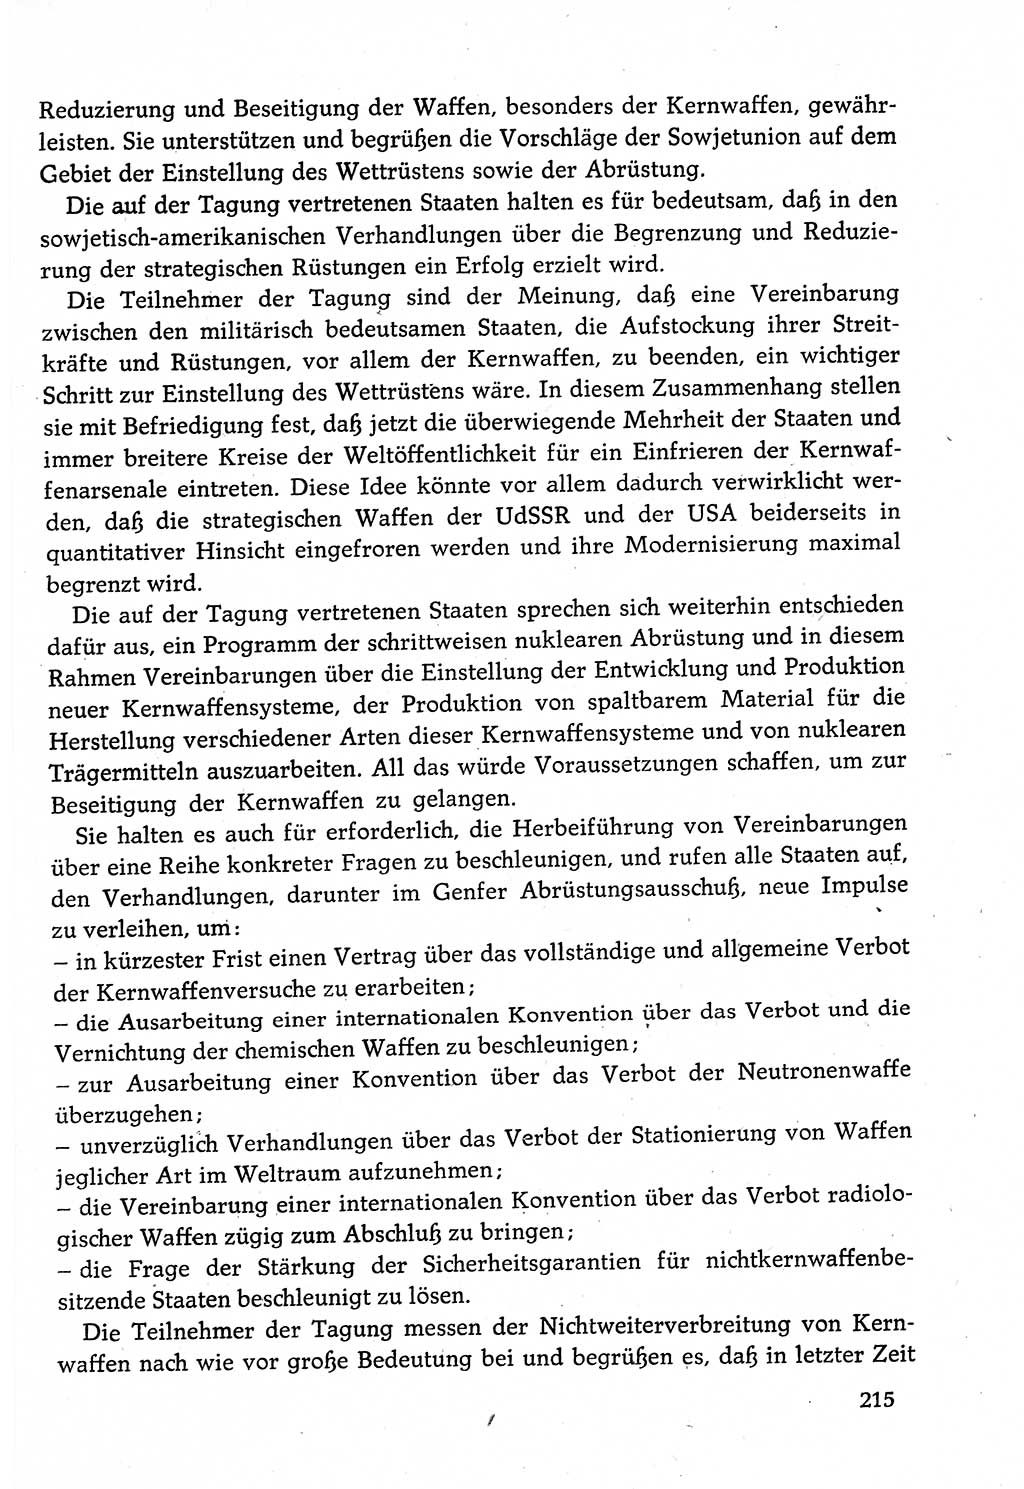 Dokumente der Sozialistischen Einheitspartei Deutschlands (SED) [Deutsche Demokratische Republik (DDR)] 1982-1983, Seite 215 (Dok. SED DDR 1982-1983, S. 215)